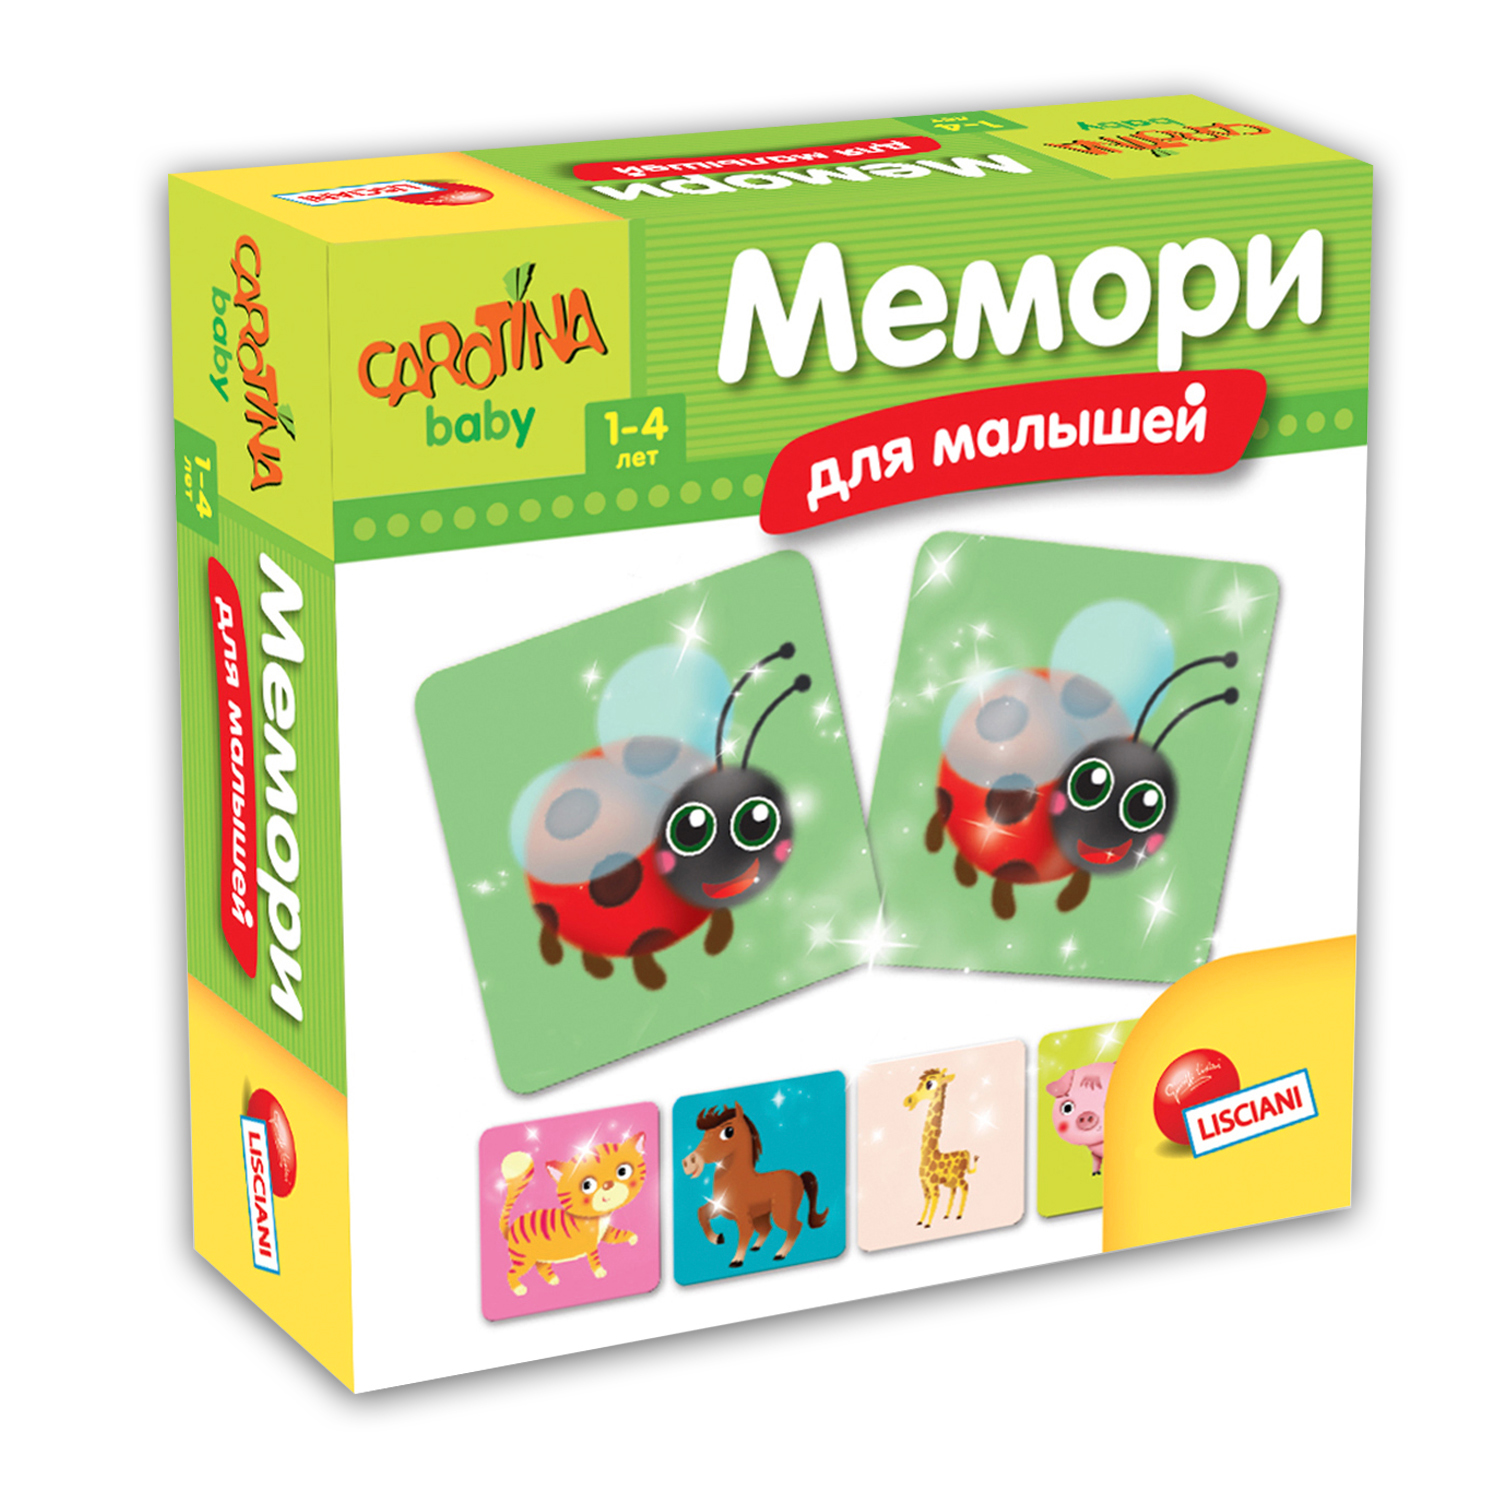 Обзор на игру Мемори для малышей